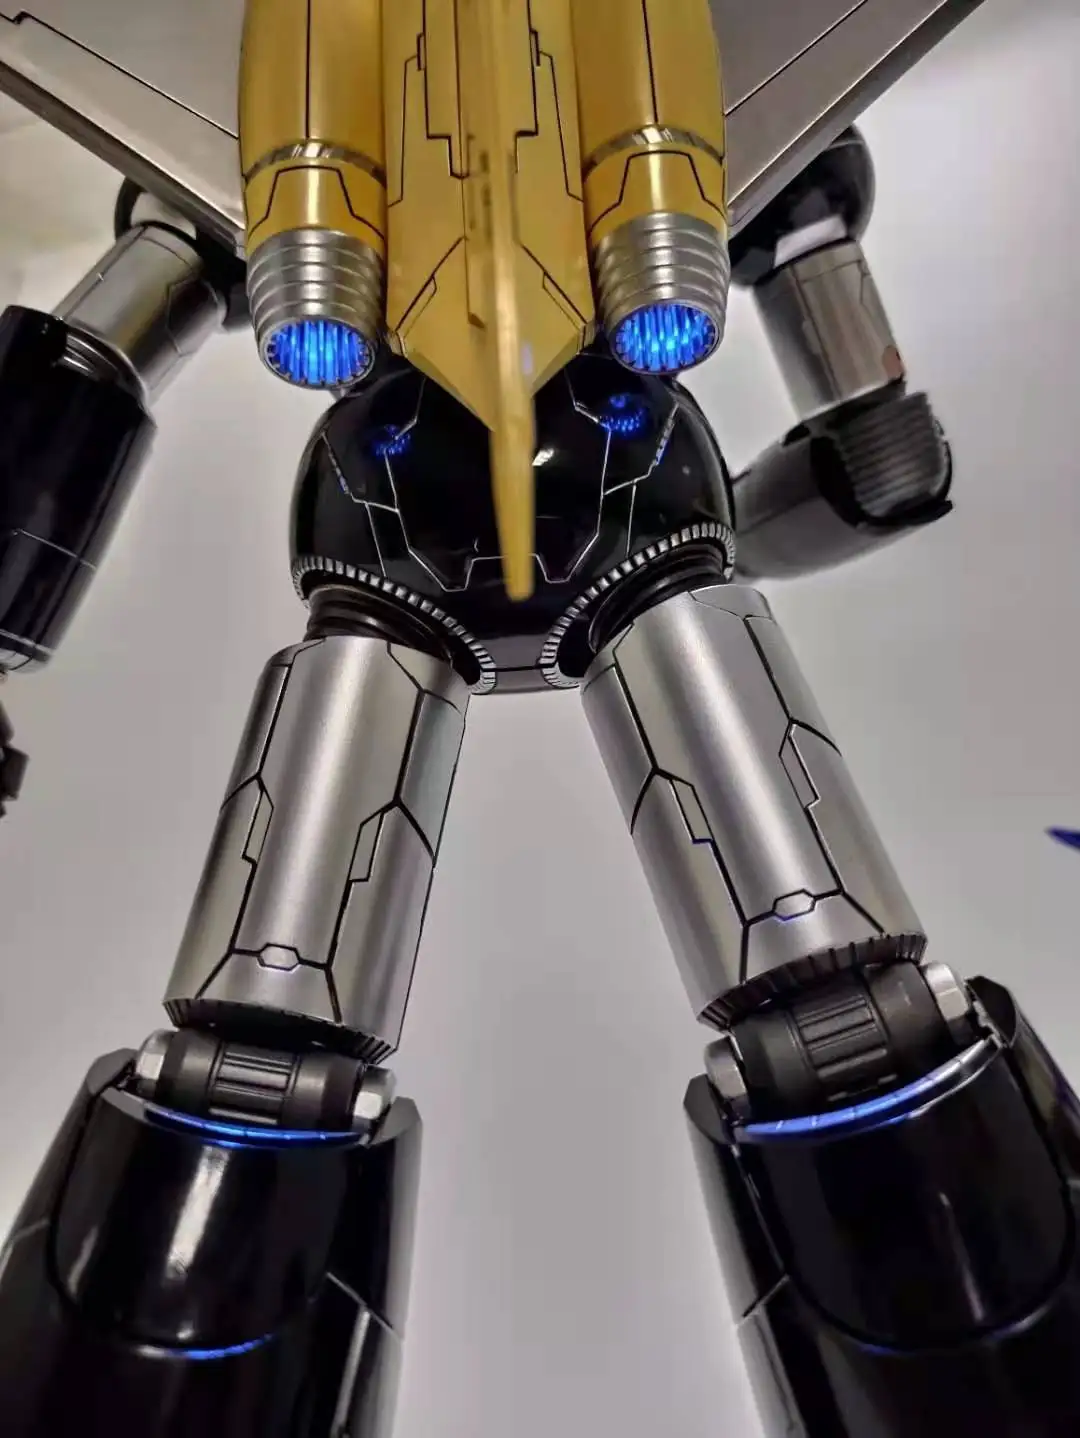 НОВИНКА В НАЛИЧИИ 37 см Трансформация King Arts Mazinger Z Oversize CR02, CR-02, основной черный цвет, фигурка КО, игрушки-роботы 0